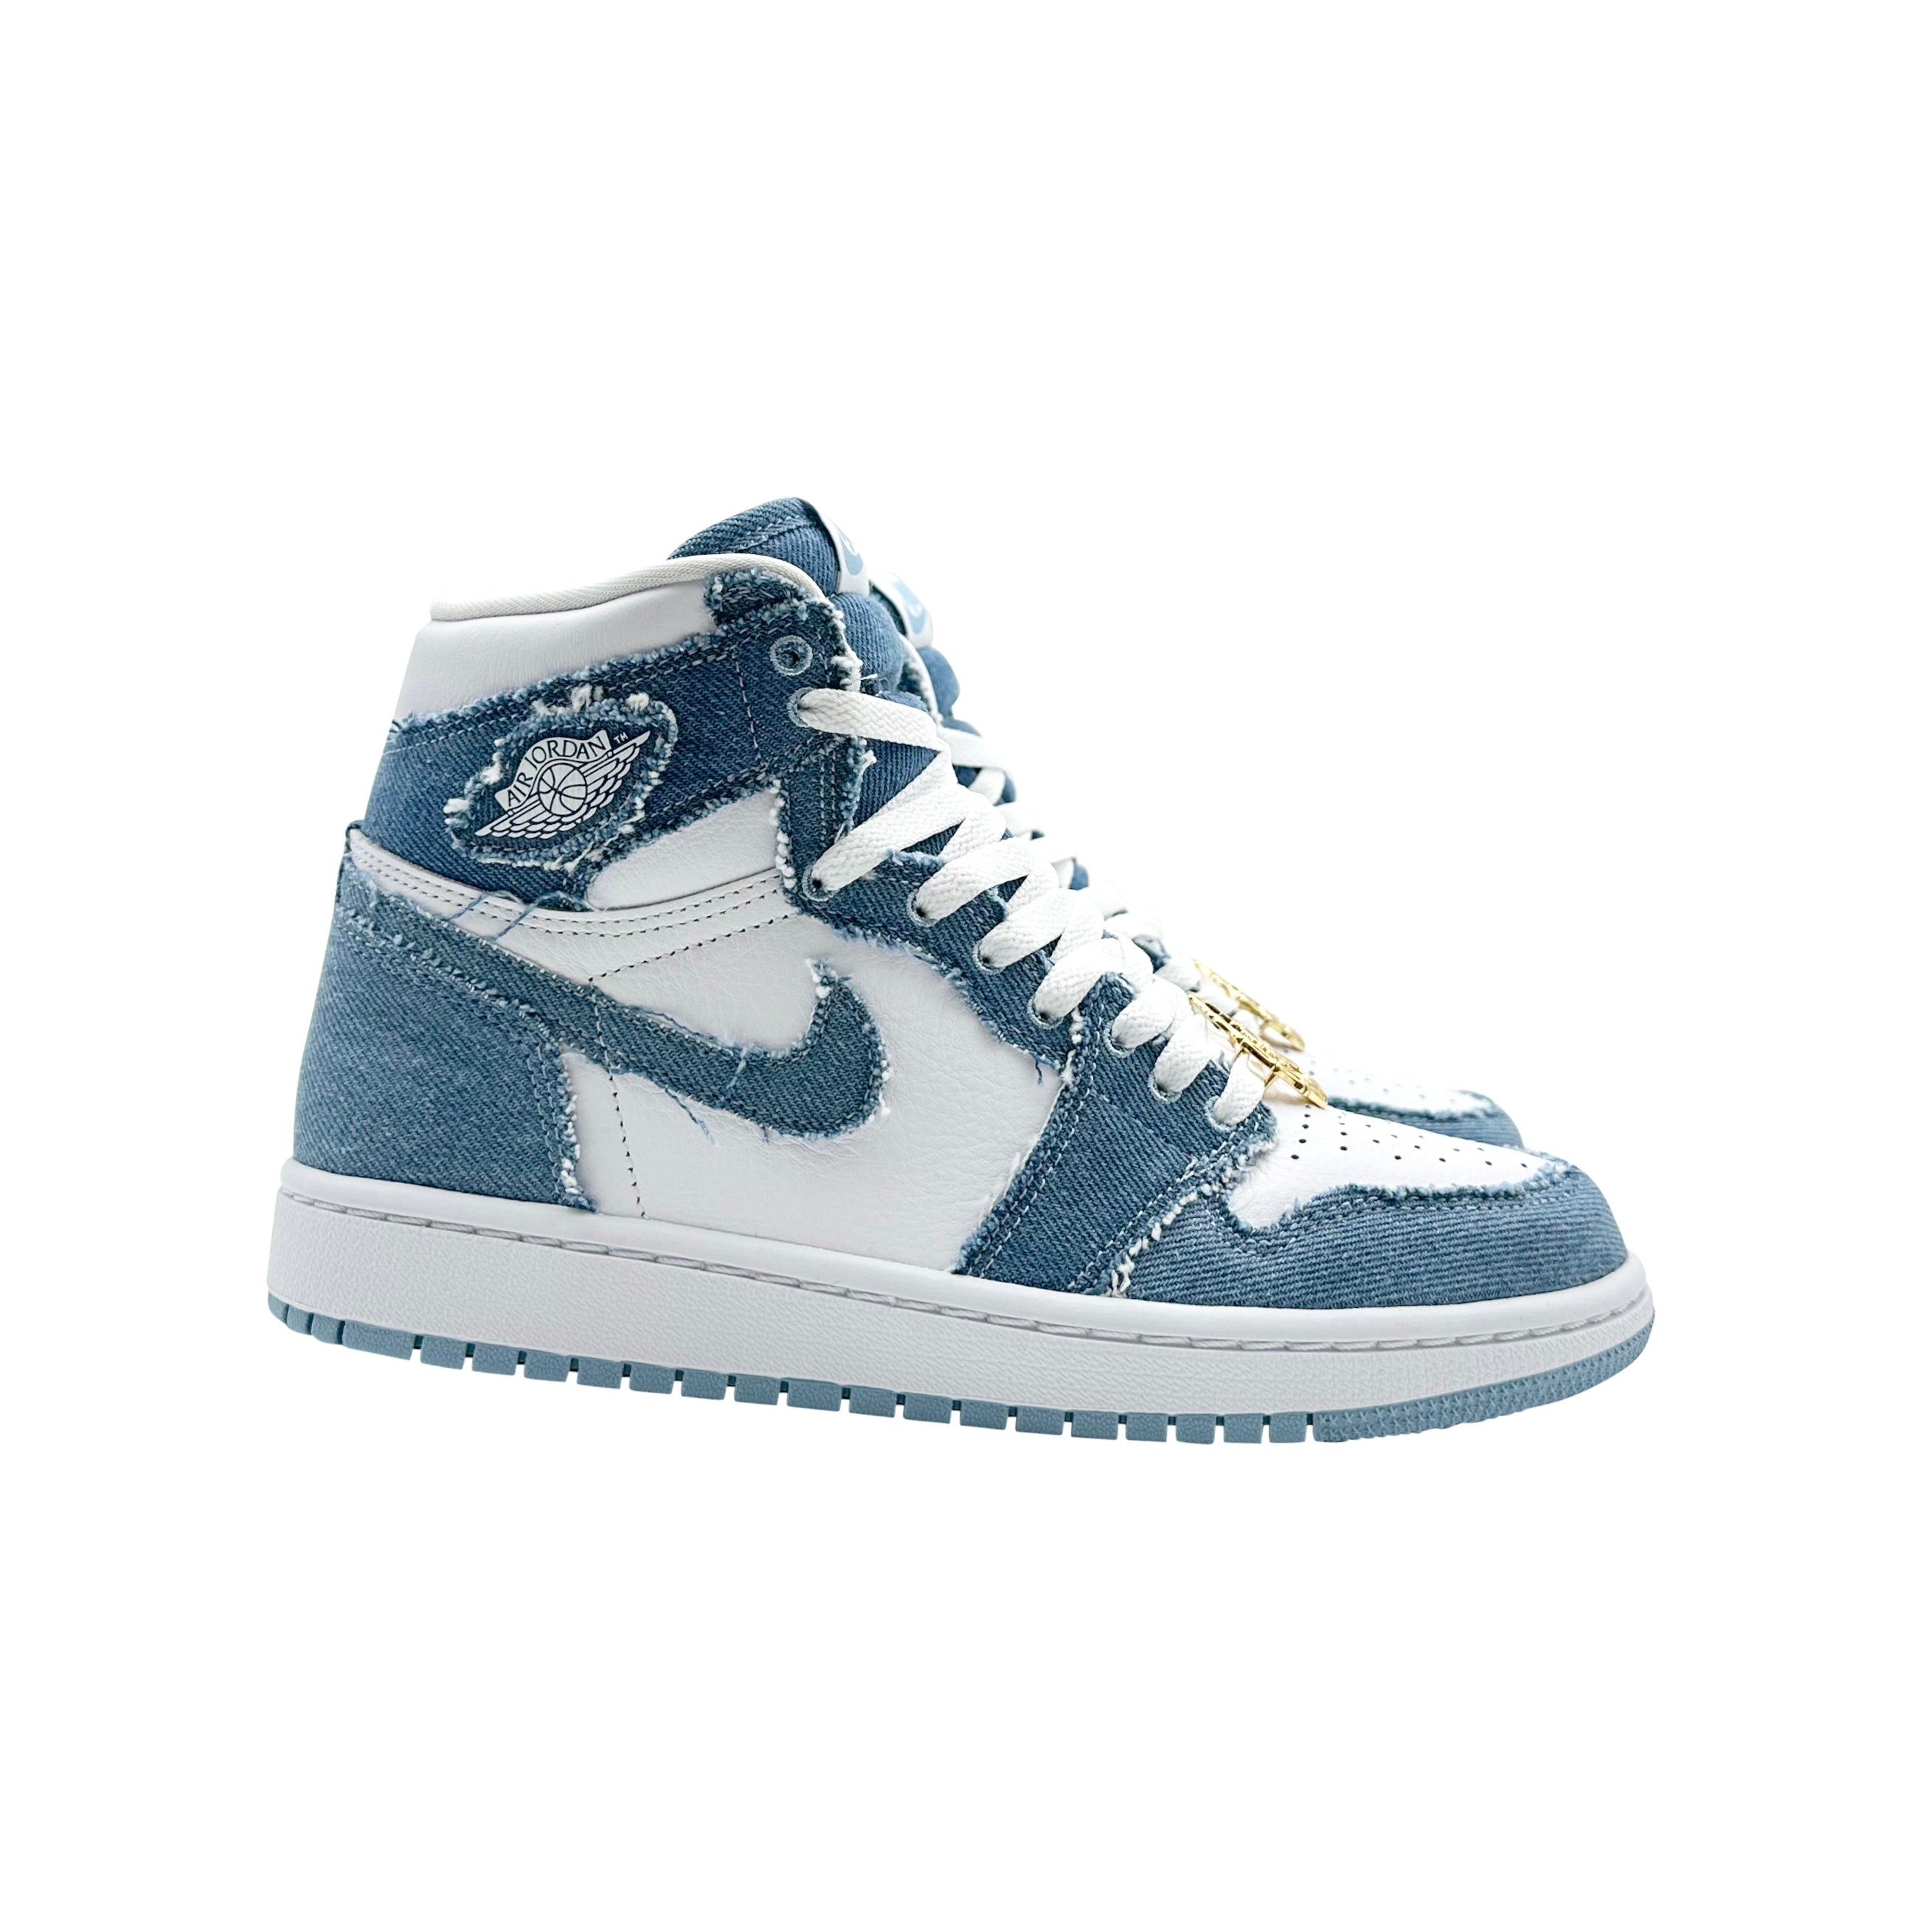 Nike Wmns Air Jordan 1 High OG Denim Blue